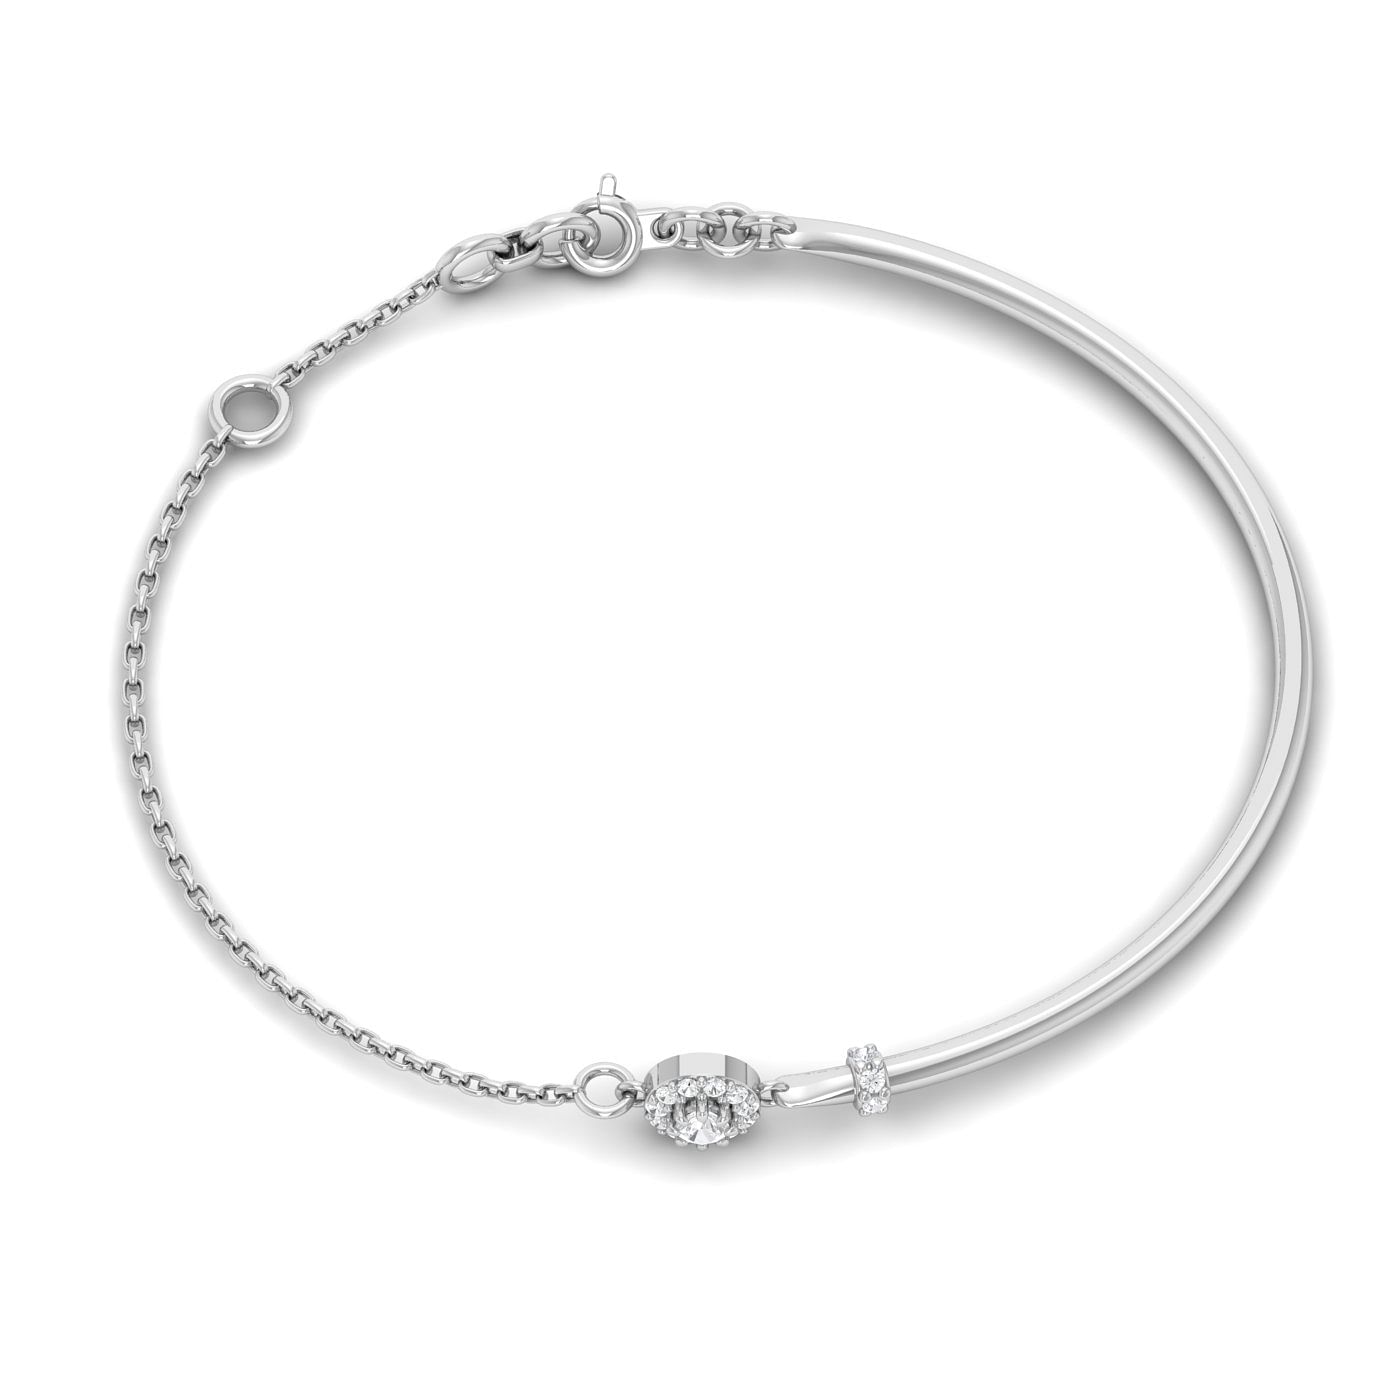 White Gold Damini Diamond Bracelet For Engagement Gift